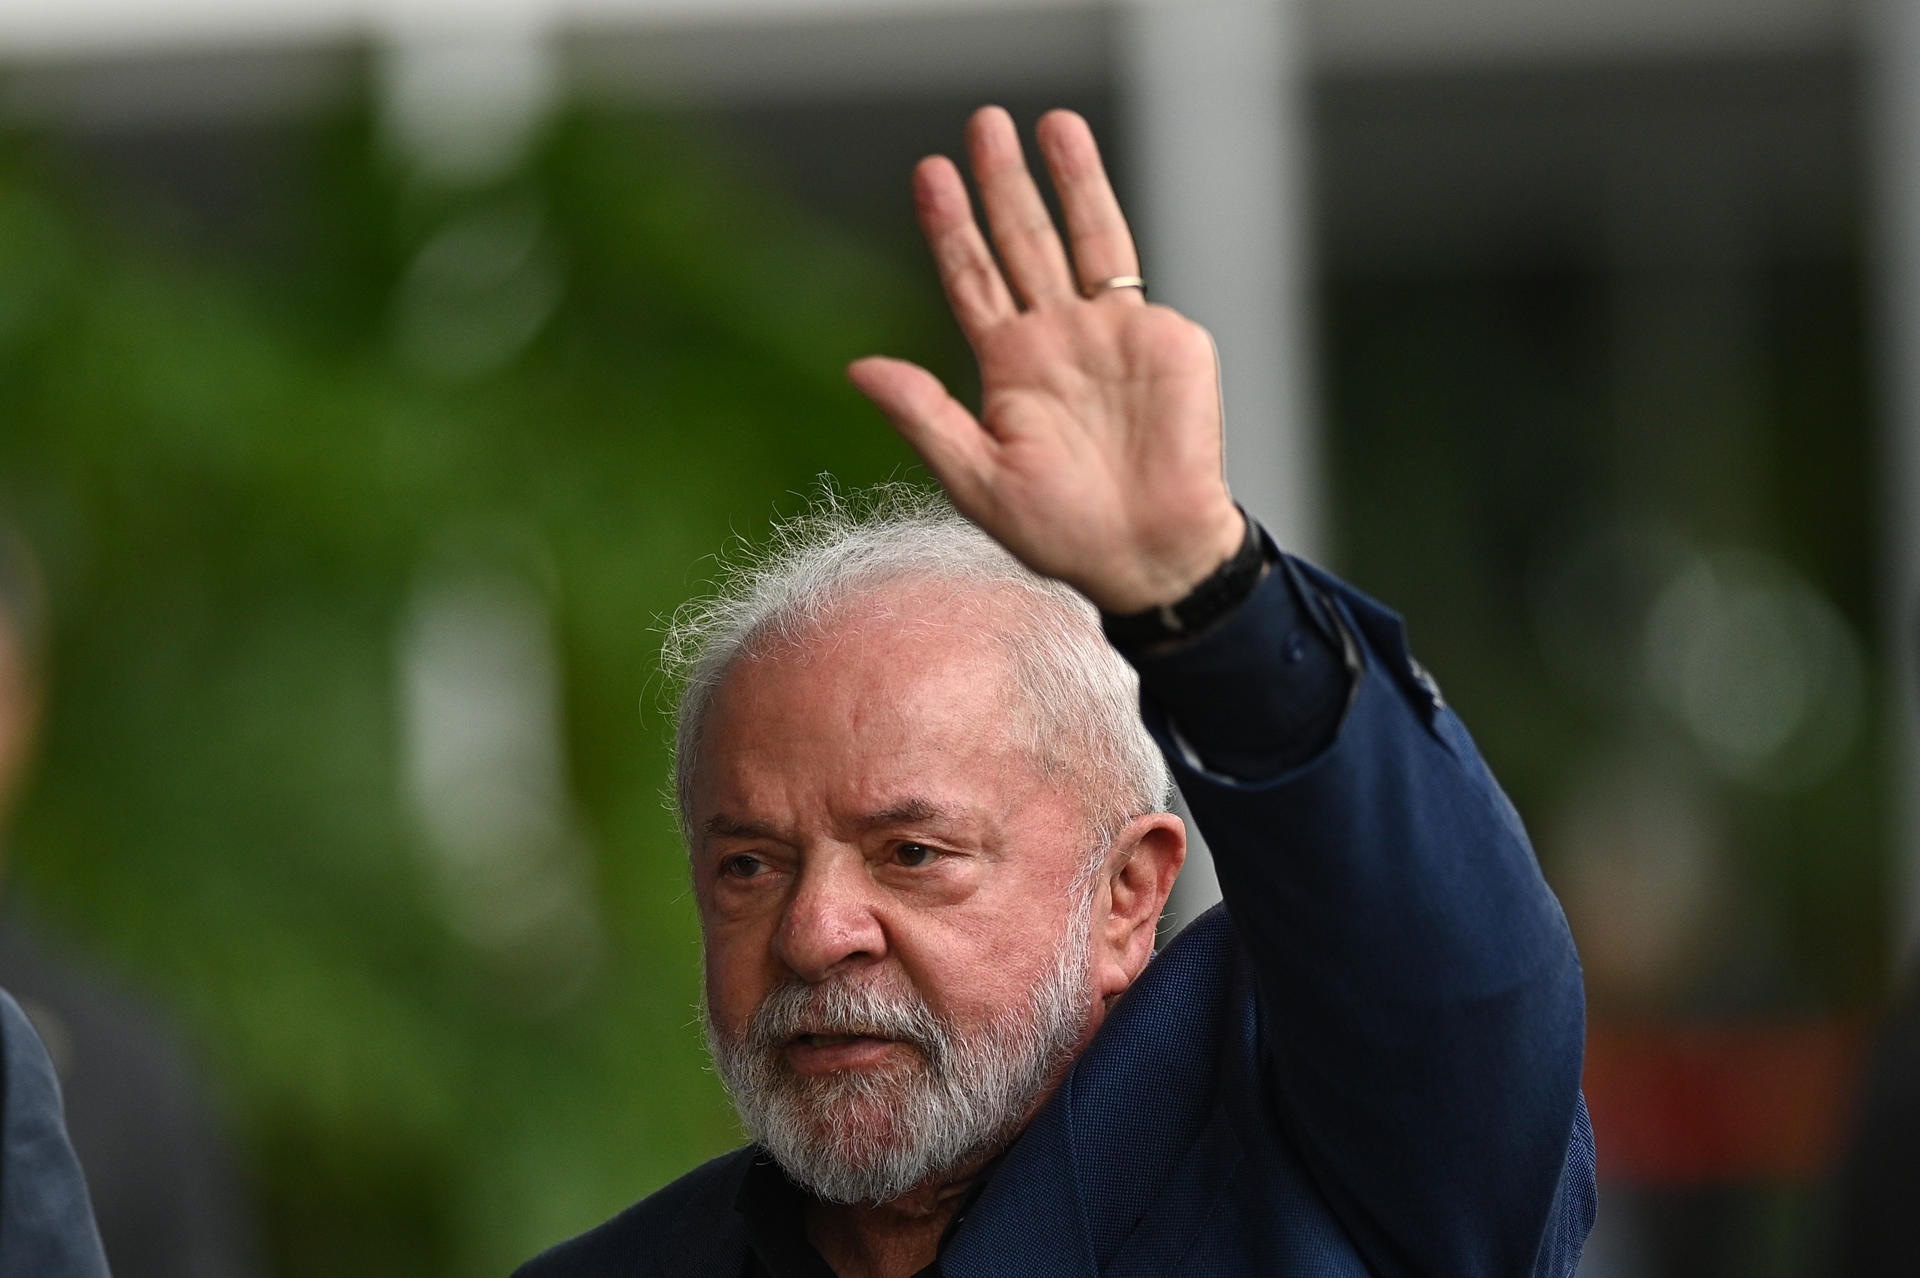 El presidente de Brasil, Luiz Inácio Lula da Silva, en una fotografía de archivo. EFE/André Borges